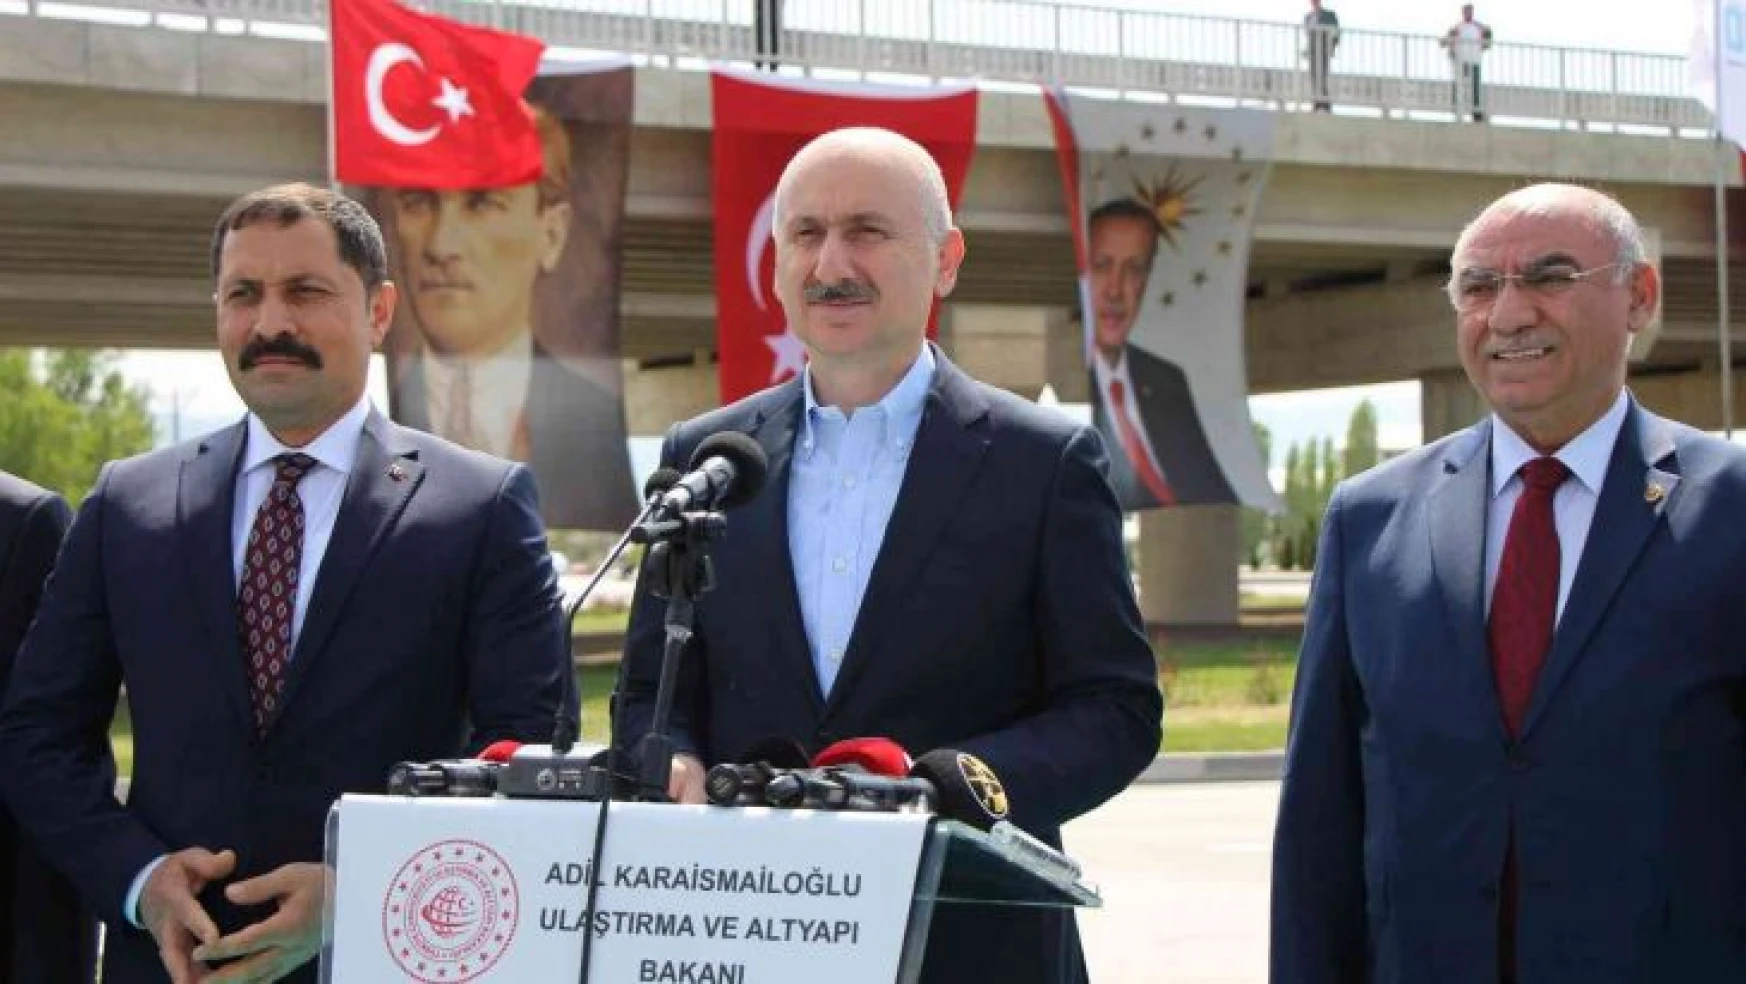 Bakan Karaismailoğlu Amasya'da konuştu: 'Yeni Türkiye'nin geleceğini planlıyoruz'